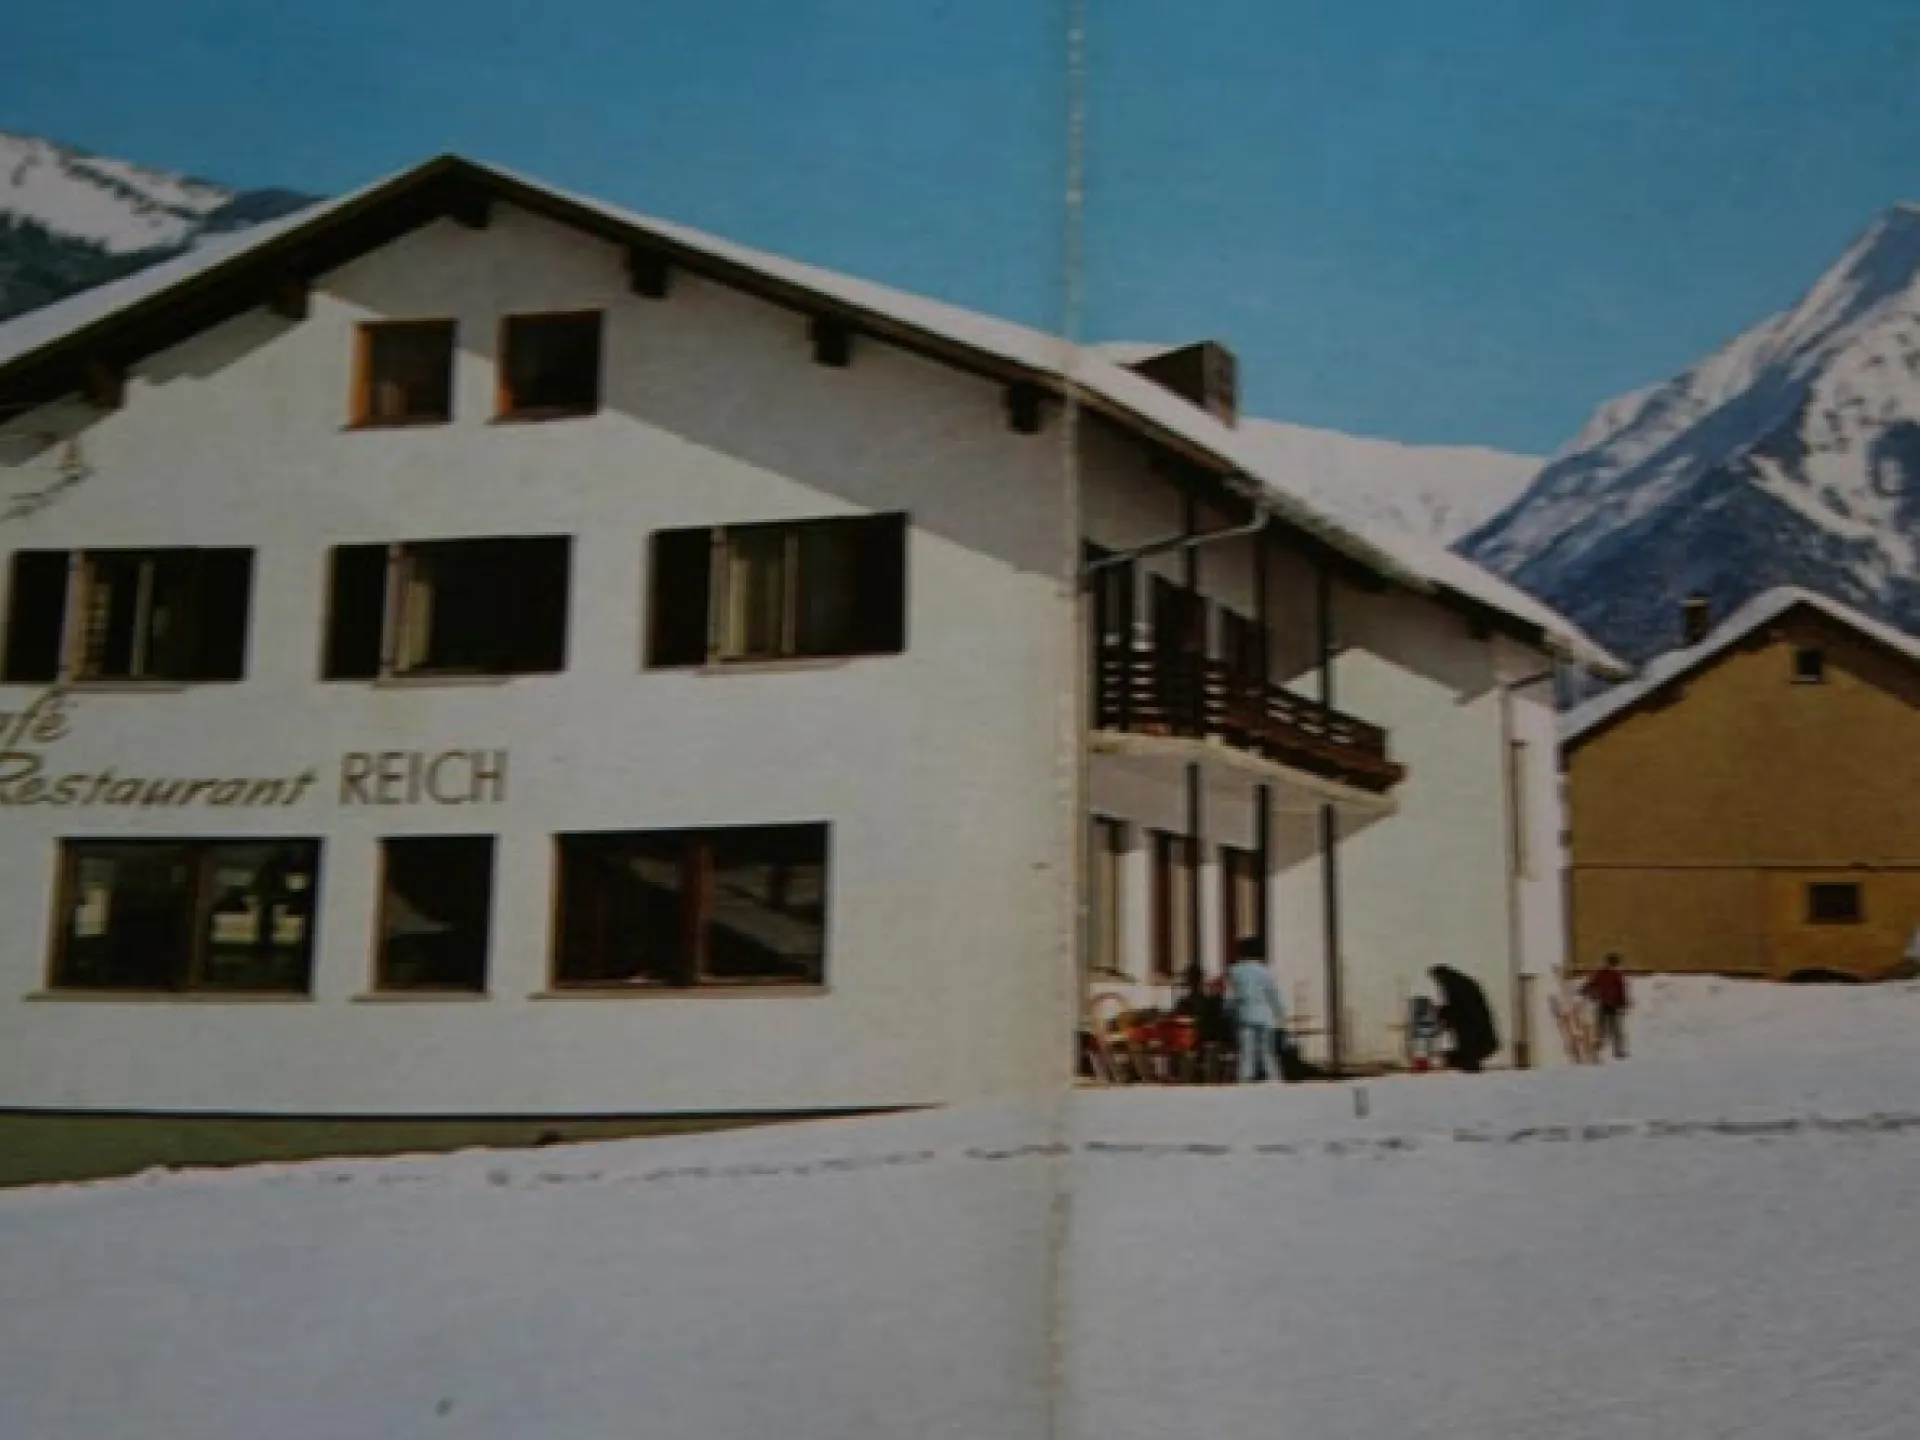 Haus 1966